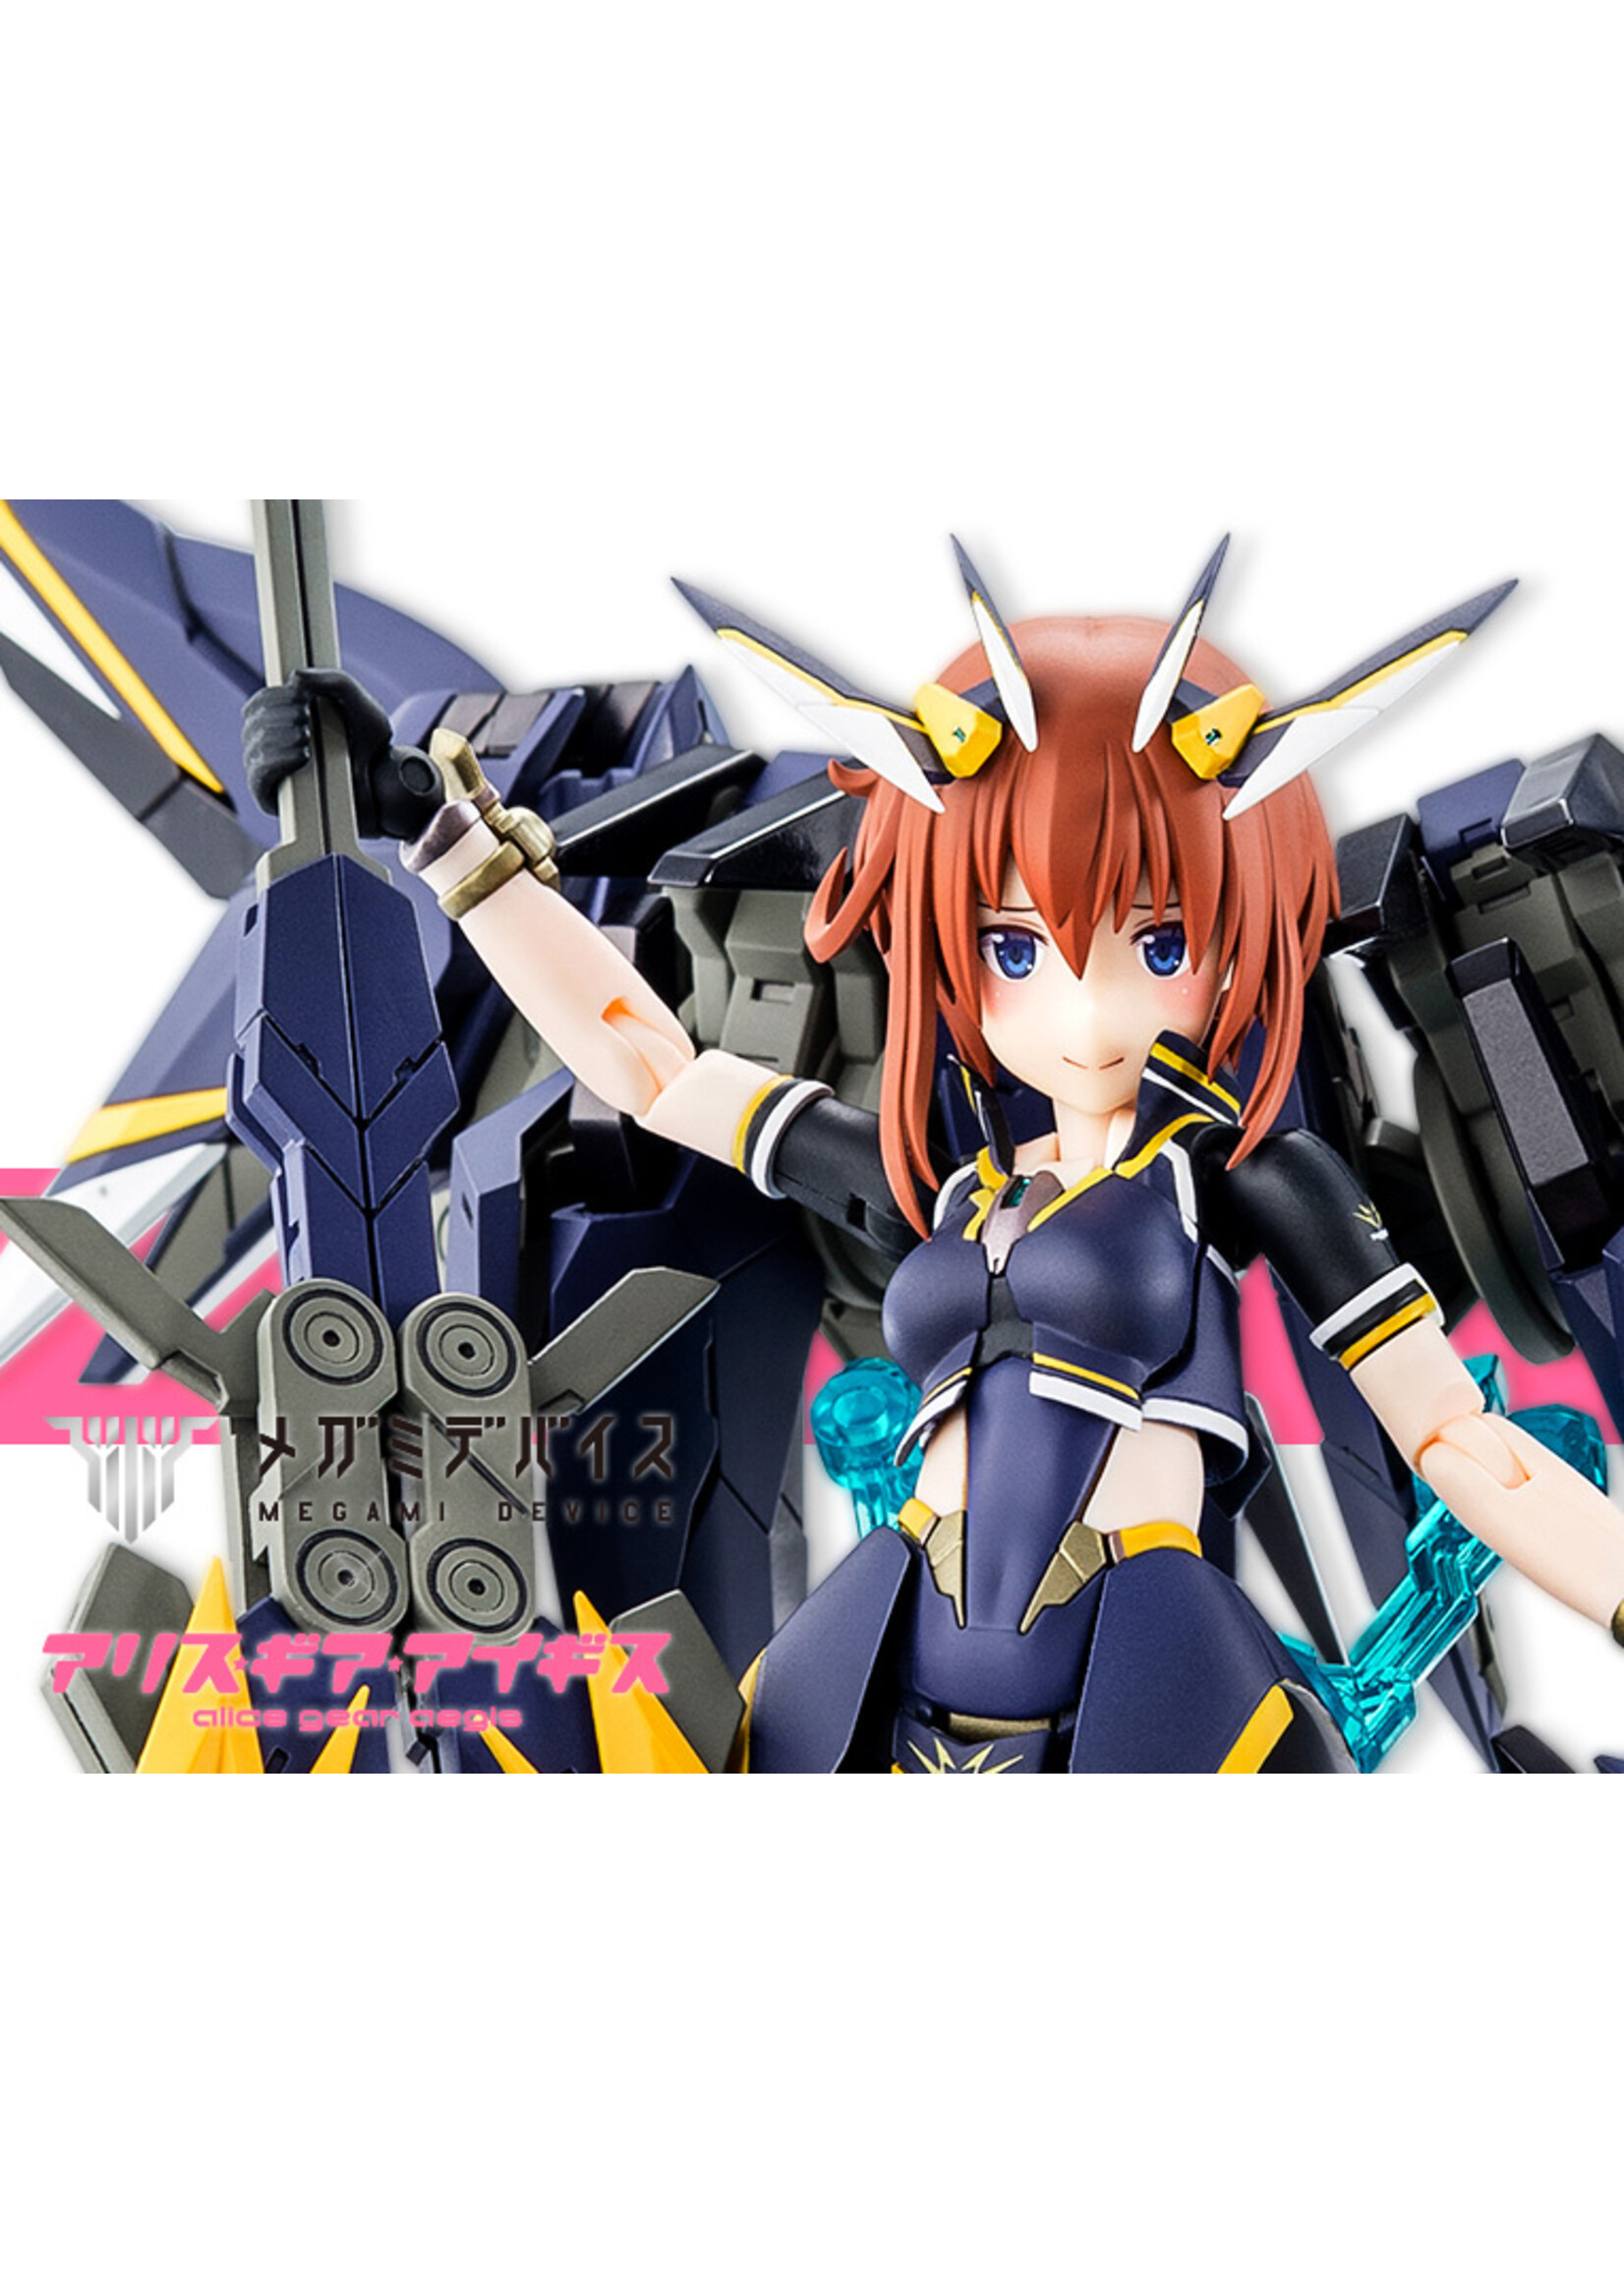 Kotobukiya KP659 - Alice Gear Aegis Megami Device: Sugumi Kanagama (GA-SHIN)